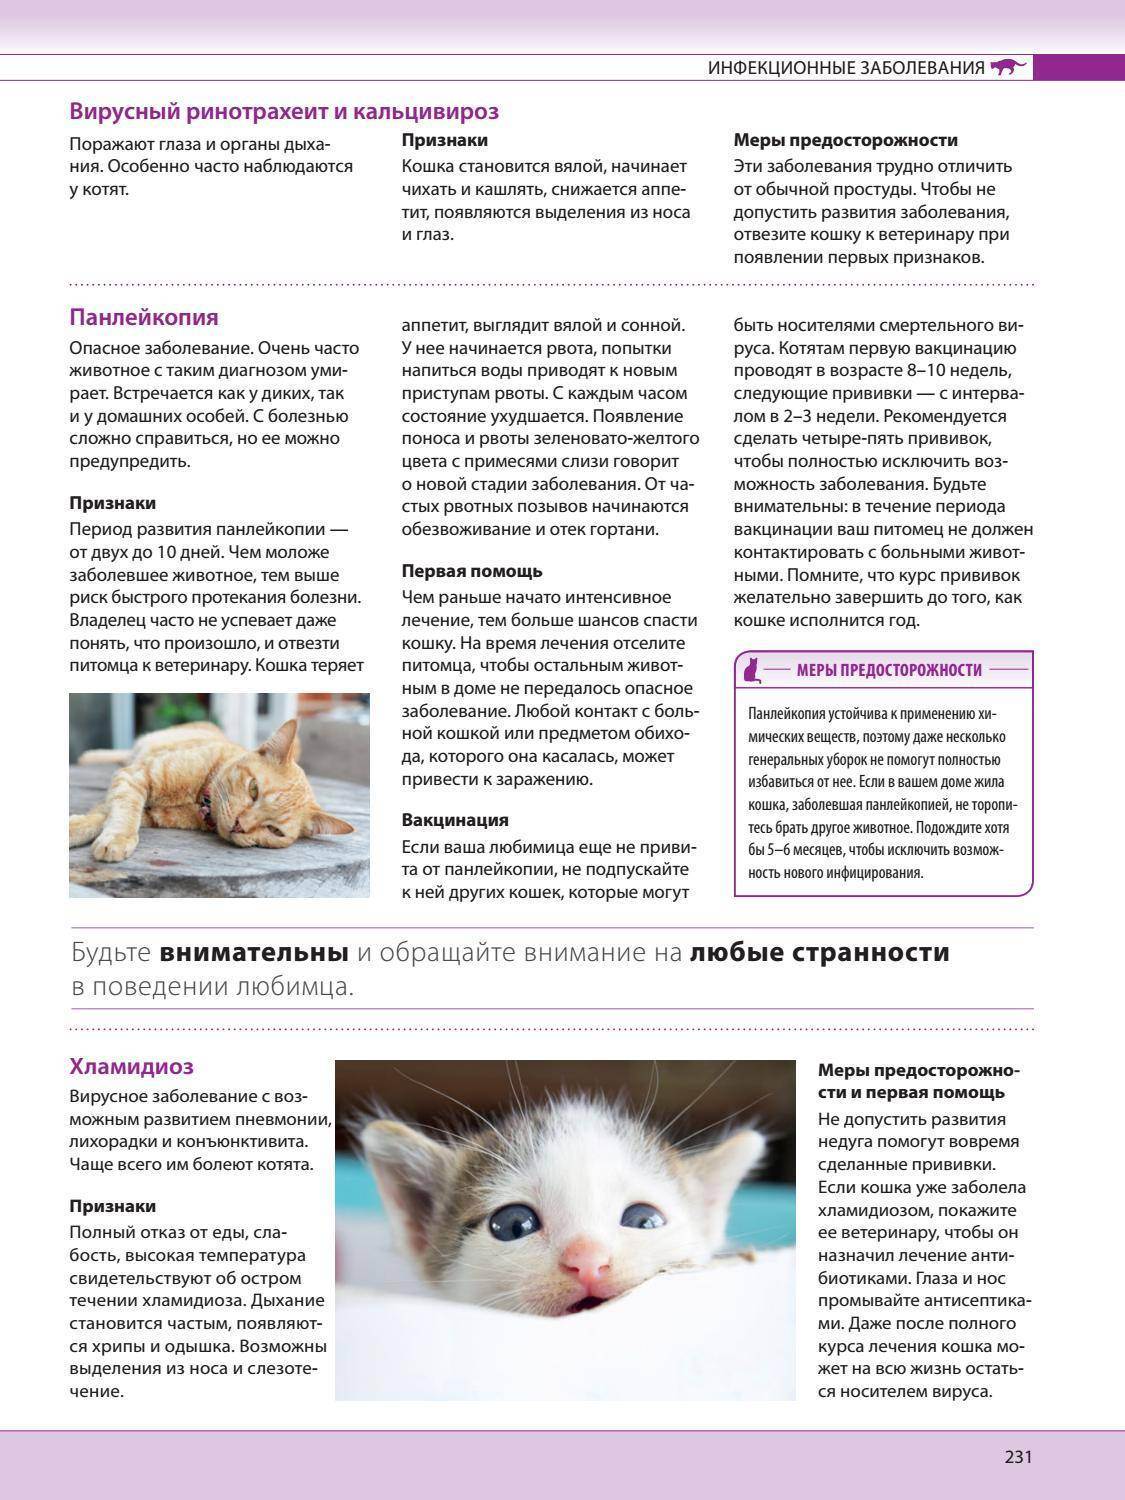 Кальцивироз кошек: симптомы, причины, лечение, профилактика